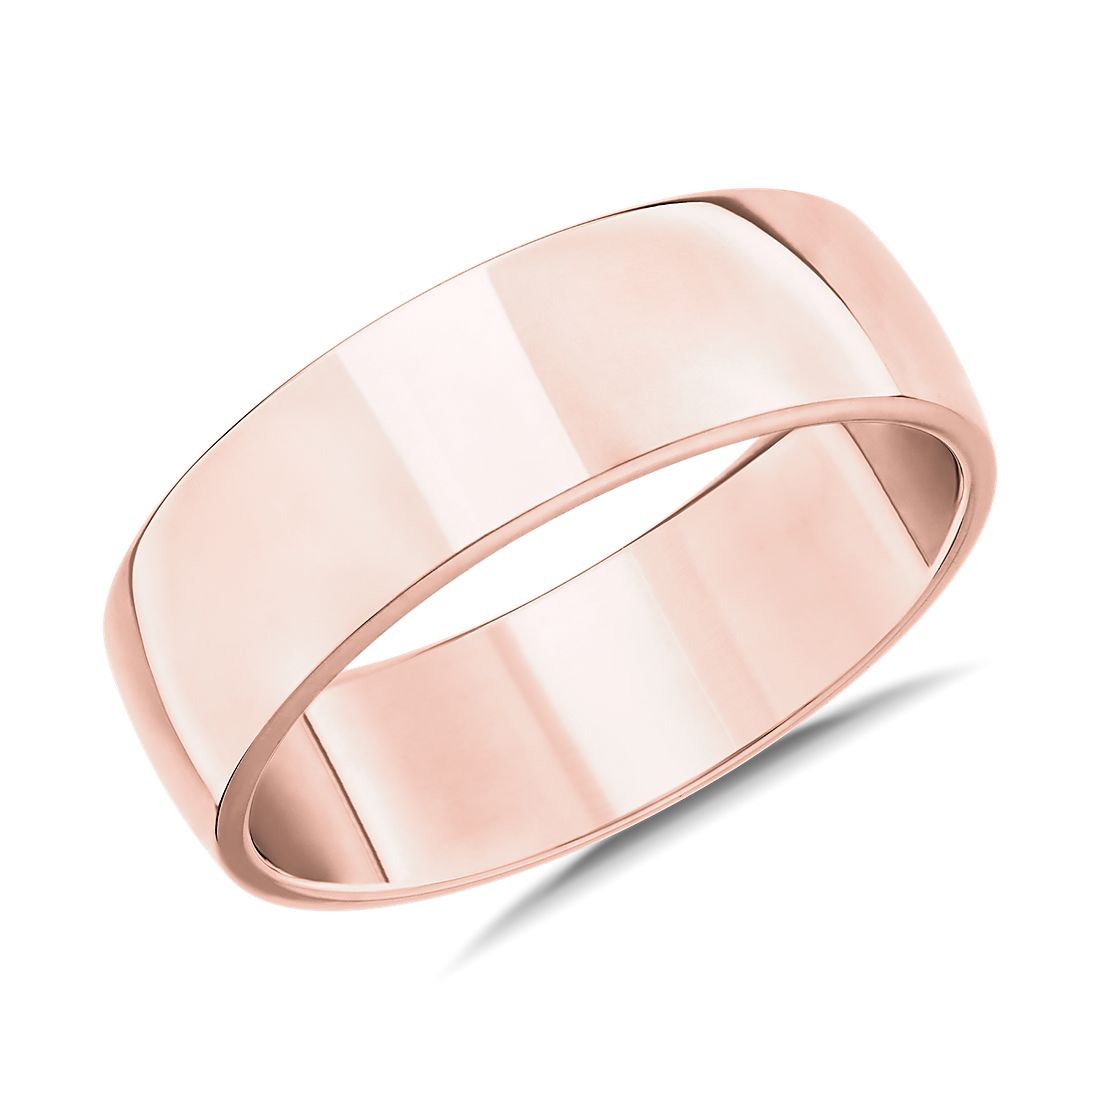 Skyline Comfort Fit Wedding Ring in 14k Rose Gold (7 mm)